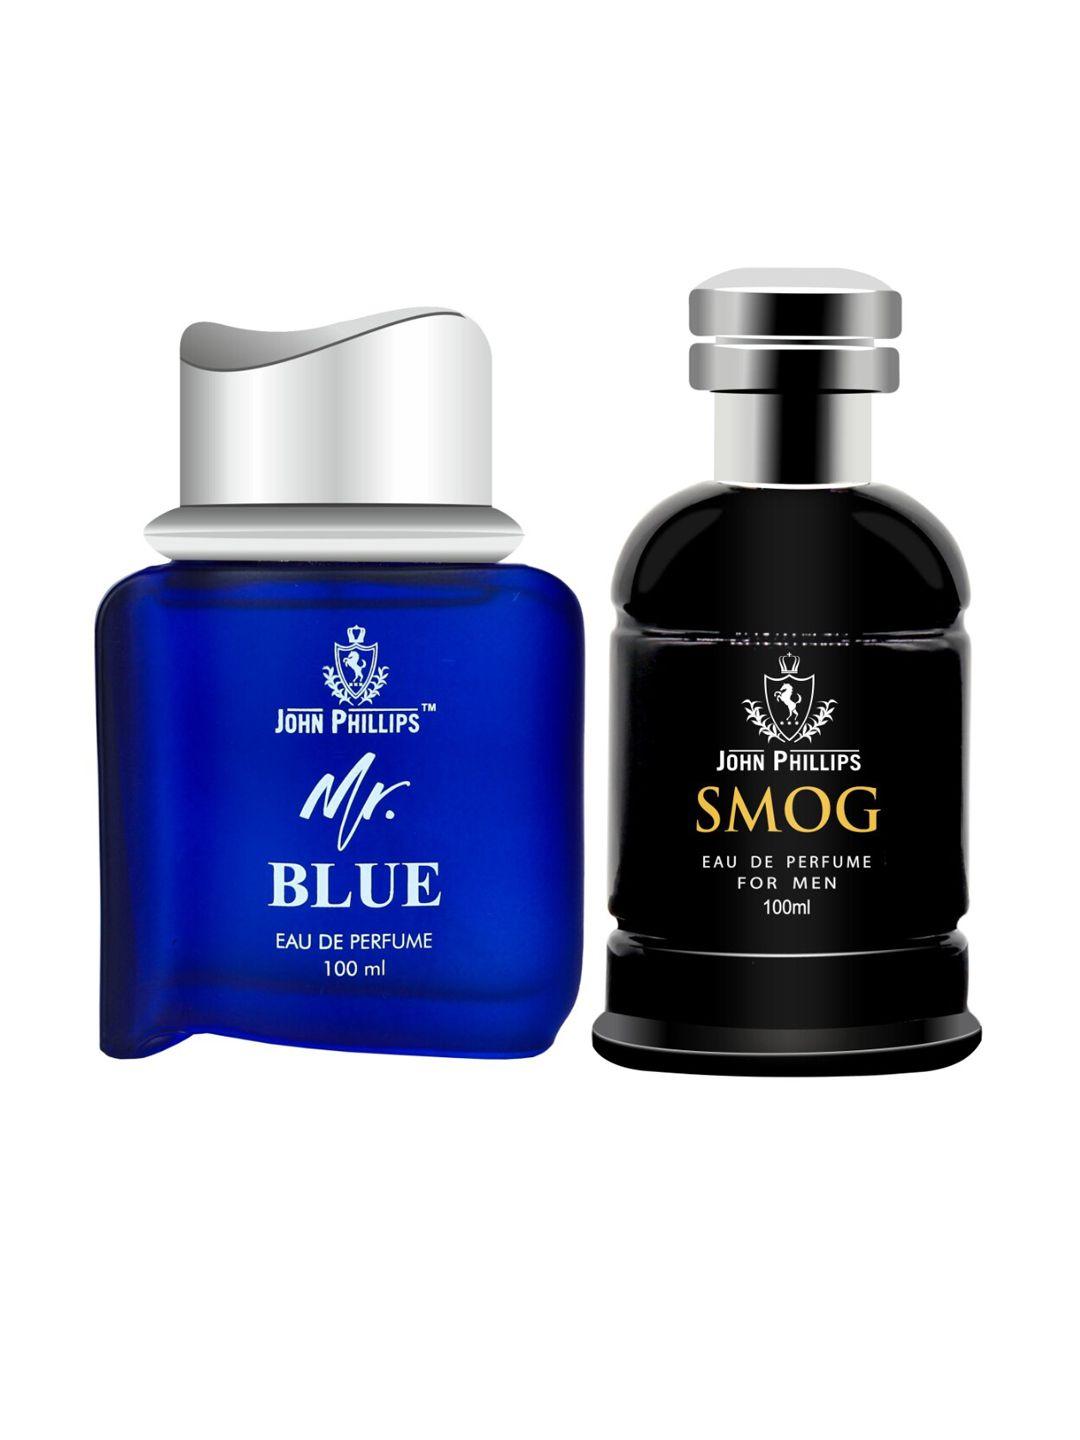 john phillips set of 2 eau de parfum 100 ml each -mr. blue & men smog